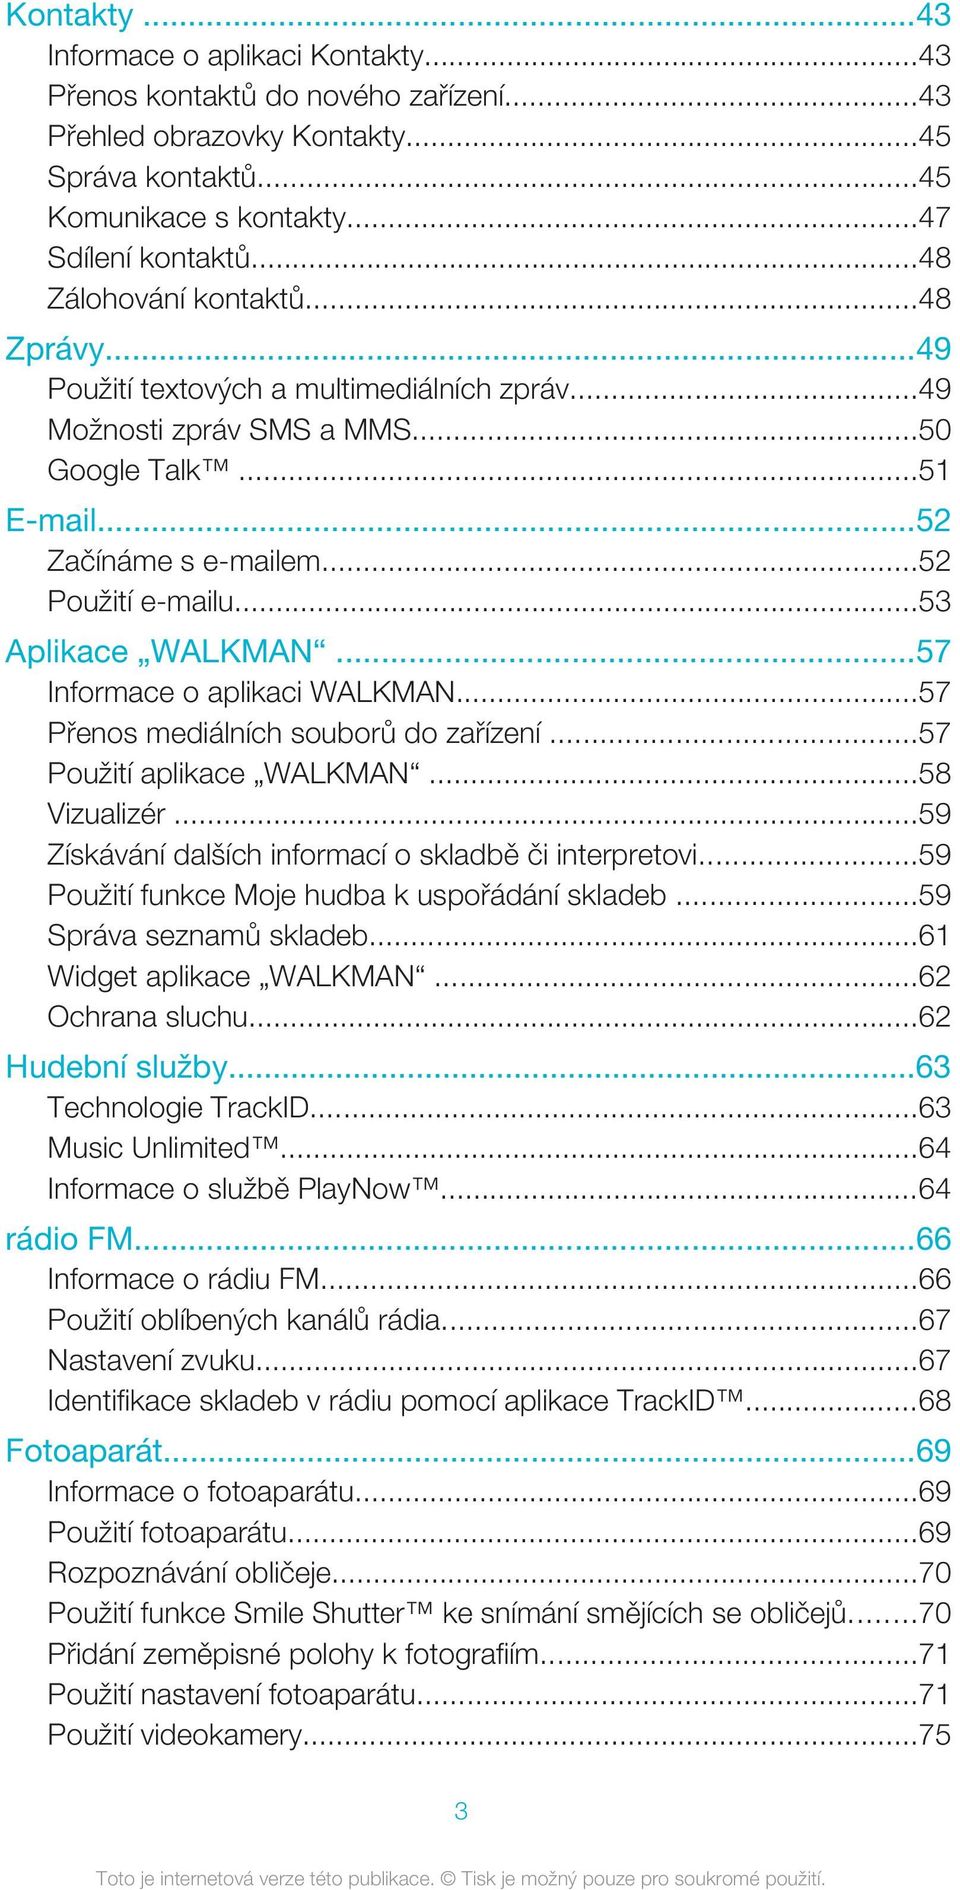 ..53 Aplikace WALKMAN...57 Informace o aplikaci WALKMAN...57 Přenos mediálních souborů do zařízení...57 Použití aplikace WALKMAN...58 Vizualizér.